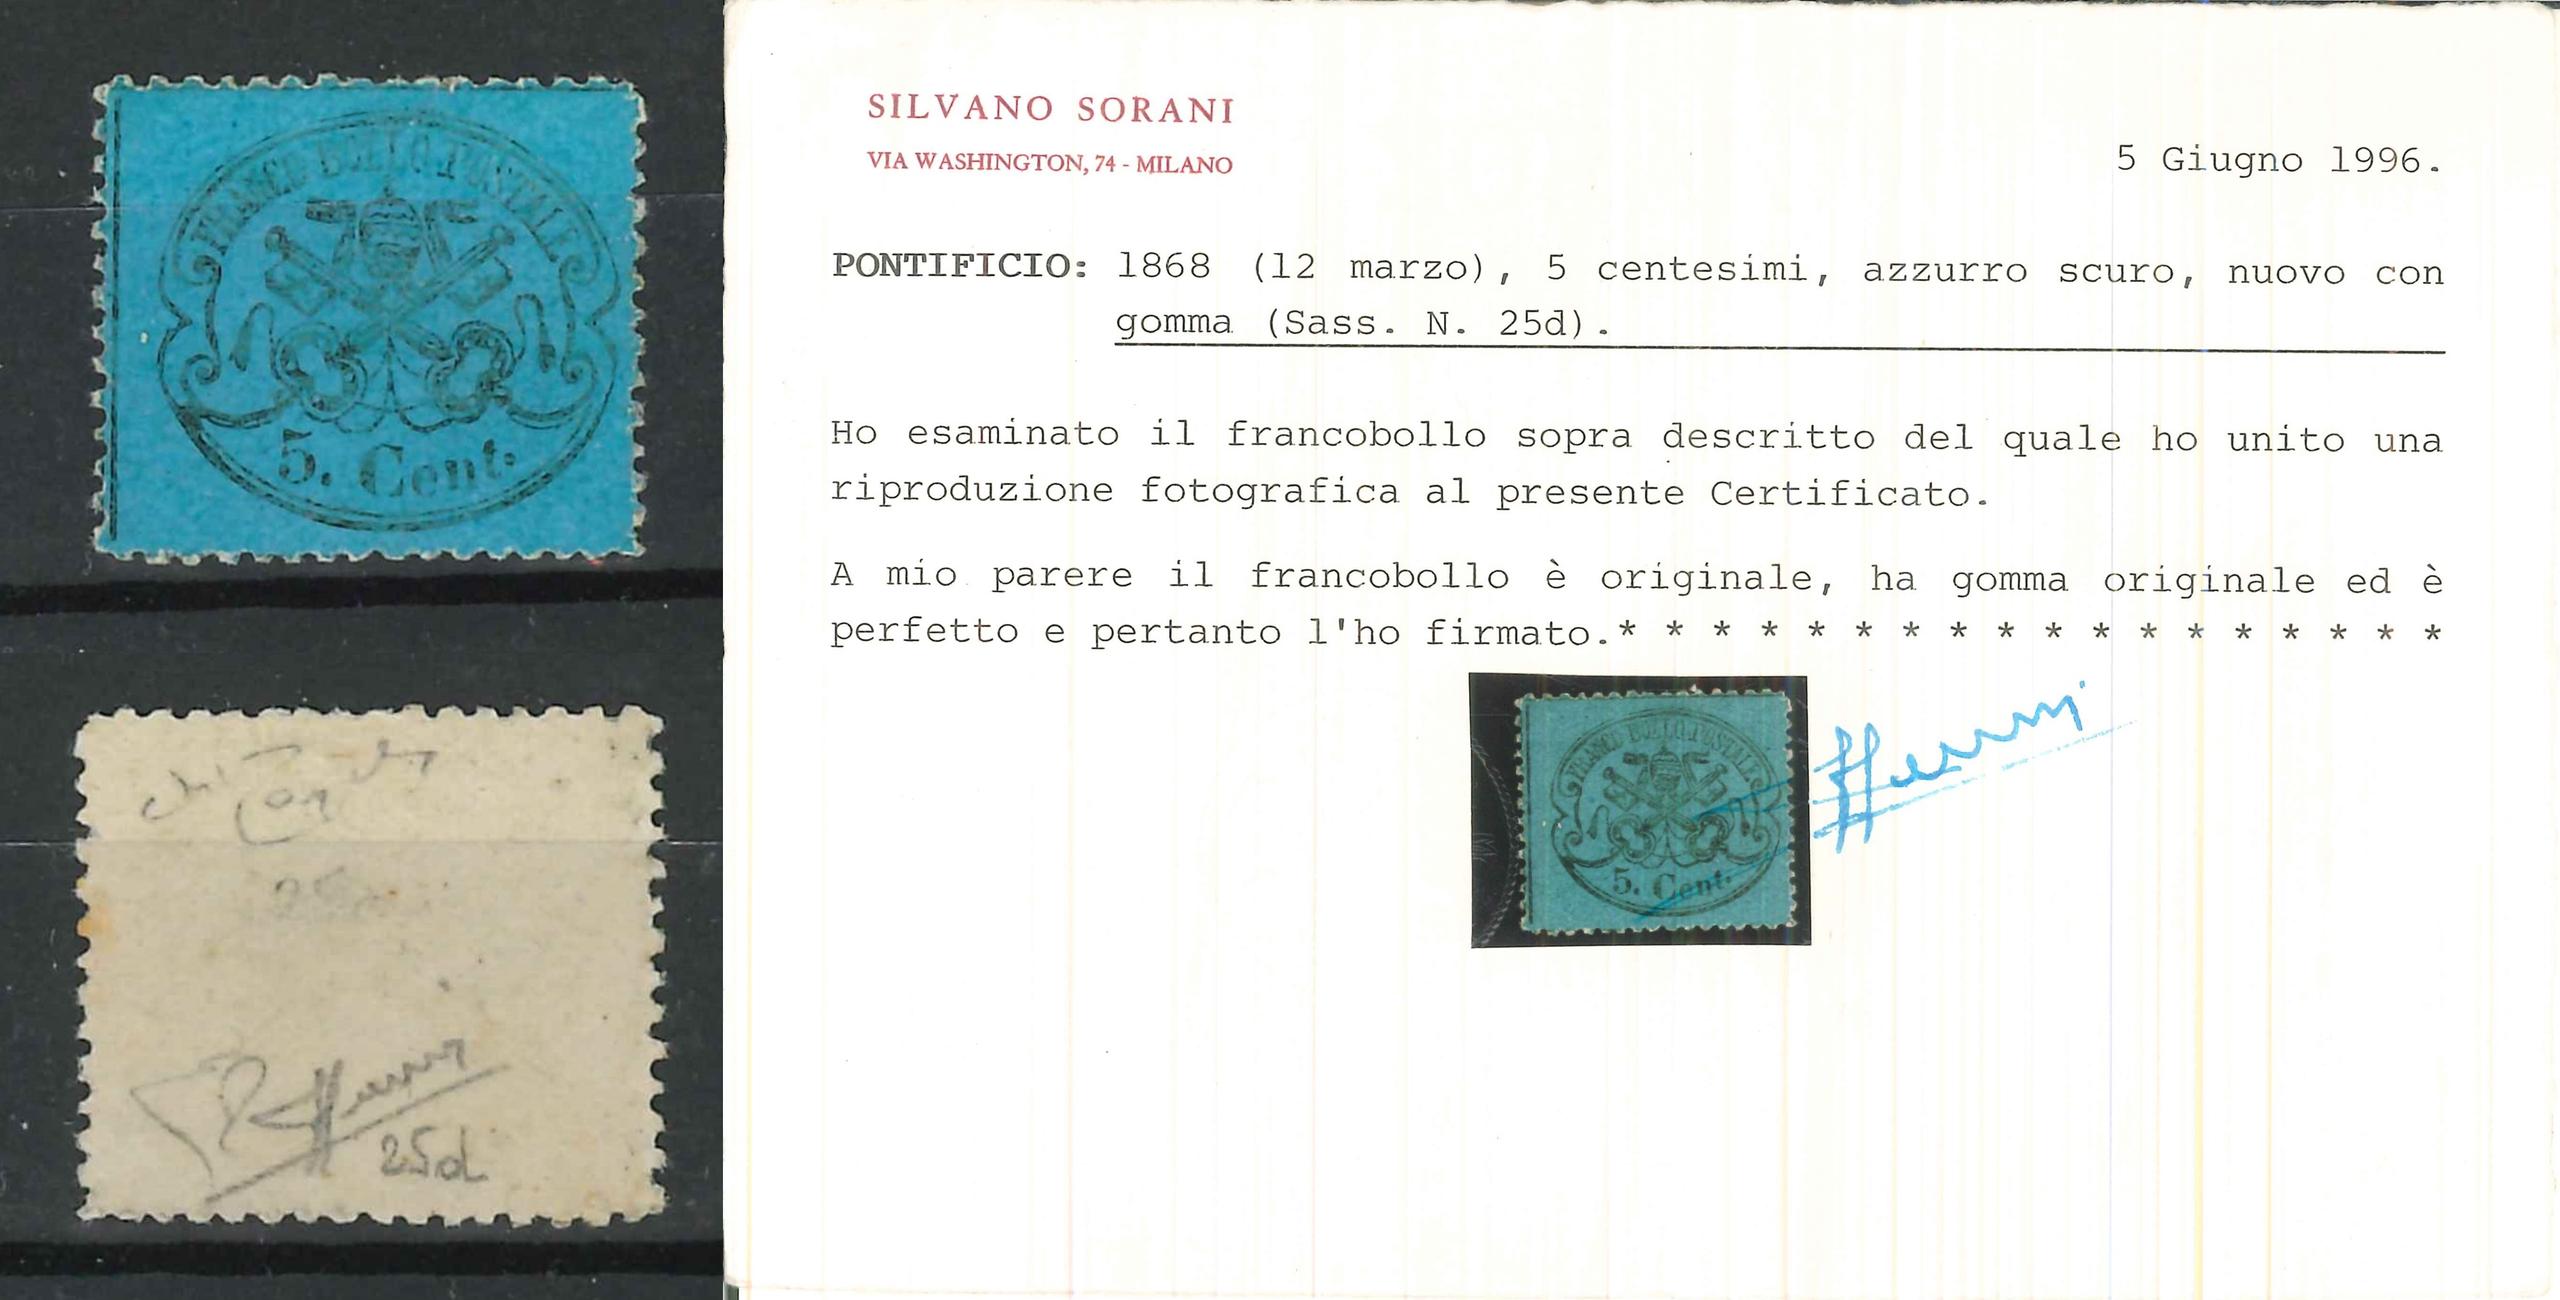 ASI STATO PONTIFICIO -1868 TL (Catalogo Sassone n.° 25 d azzurro scuro)